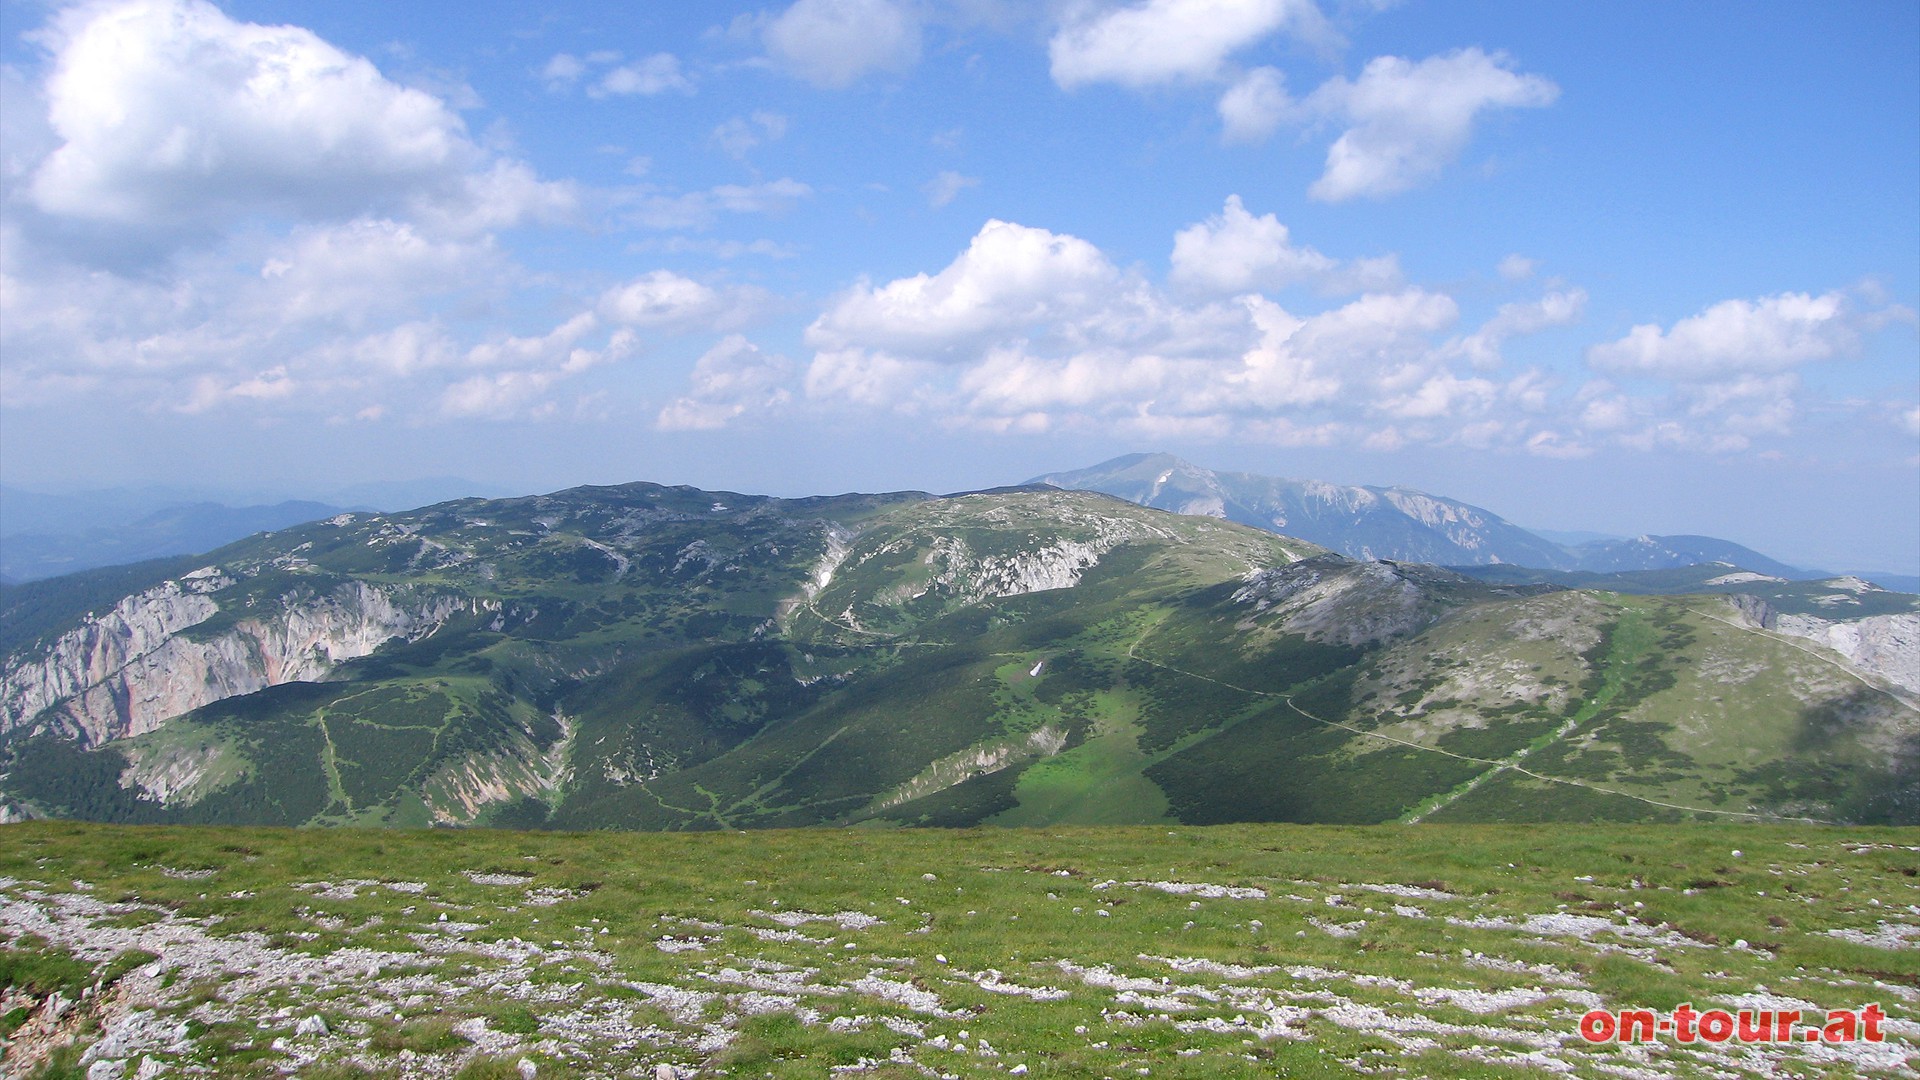 Im Nordosten das weitläufige Raxplateau und im Hintergrund der Schneeberg.